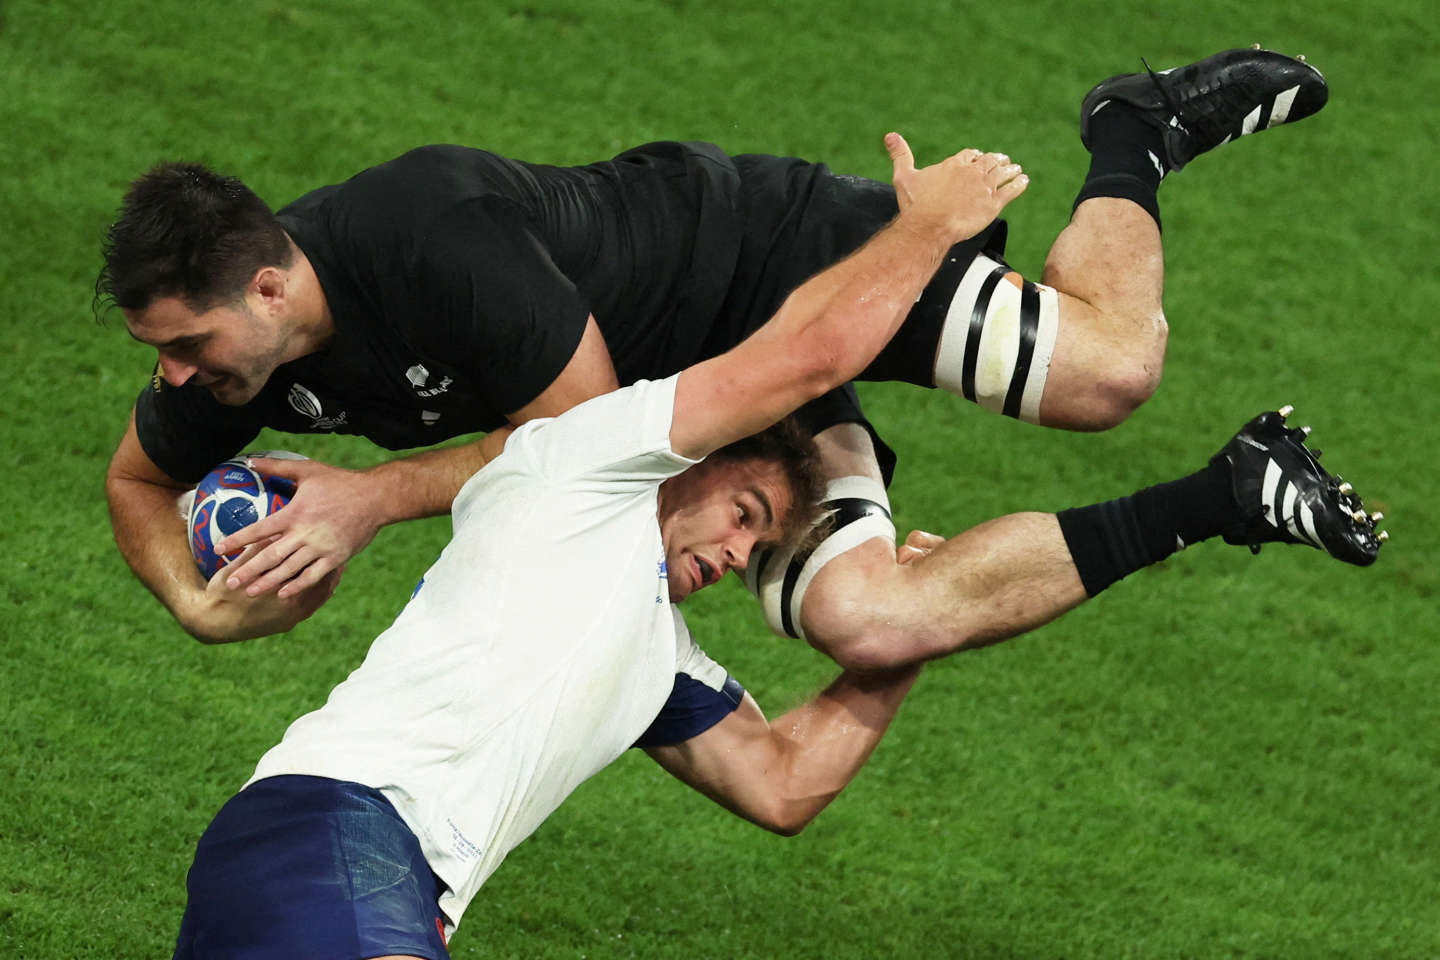 Coupe du monde de rugby : les Bleus frappent un grand « coup psychologique » après leur victoire sur la Nouvelle-Zélande, selon la presse étrangère